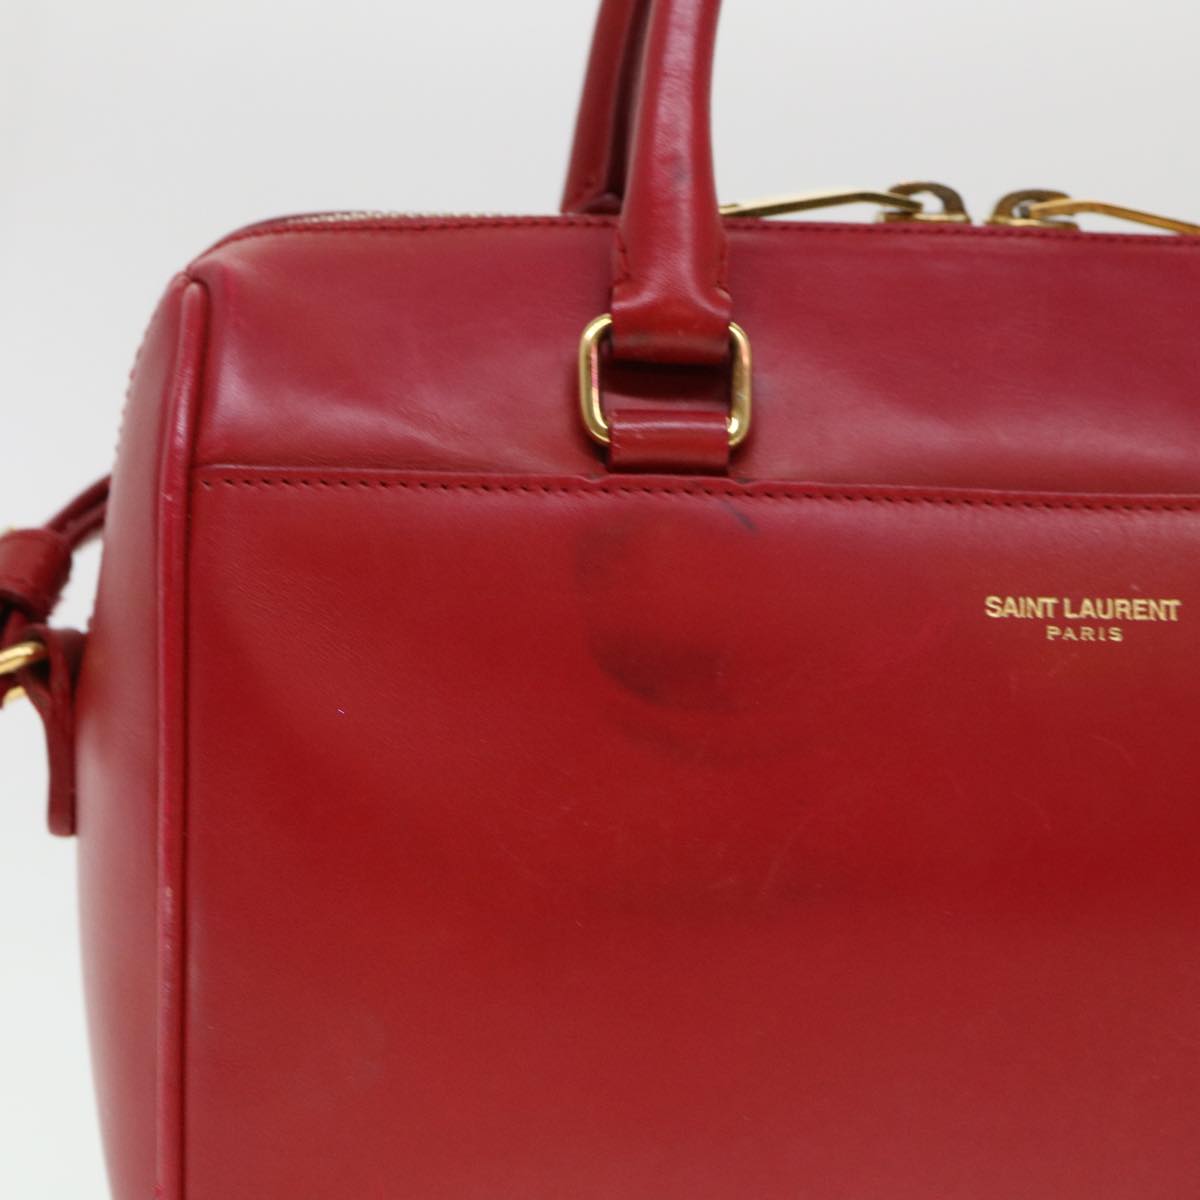 SAINT LAURENT Shoulder Bag Leather 2way Red Auth am4031 - 0